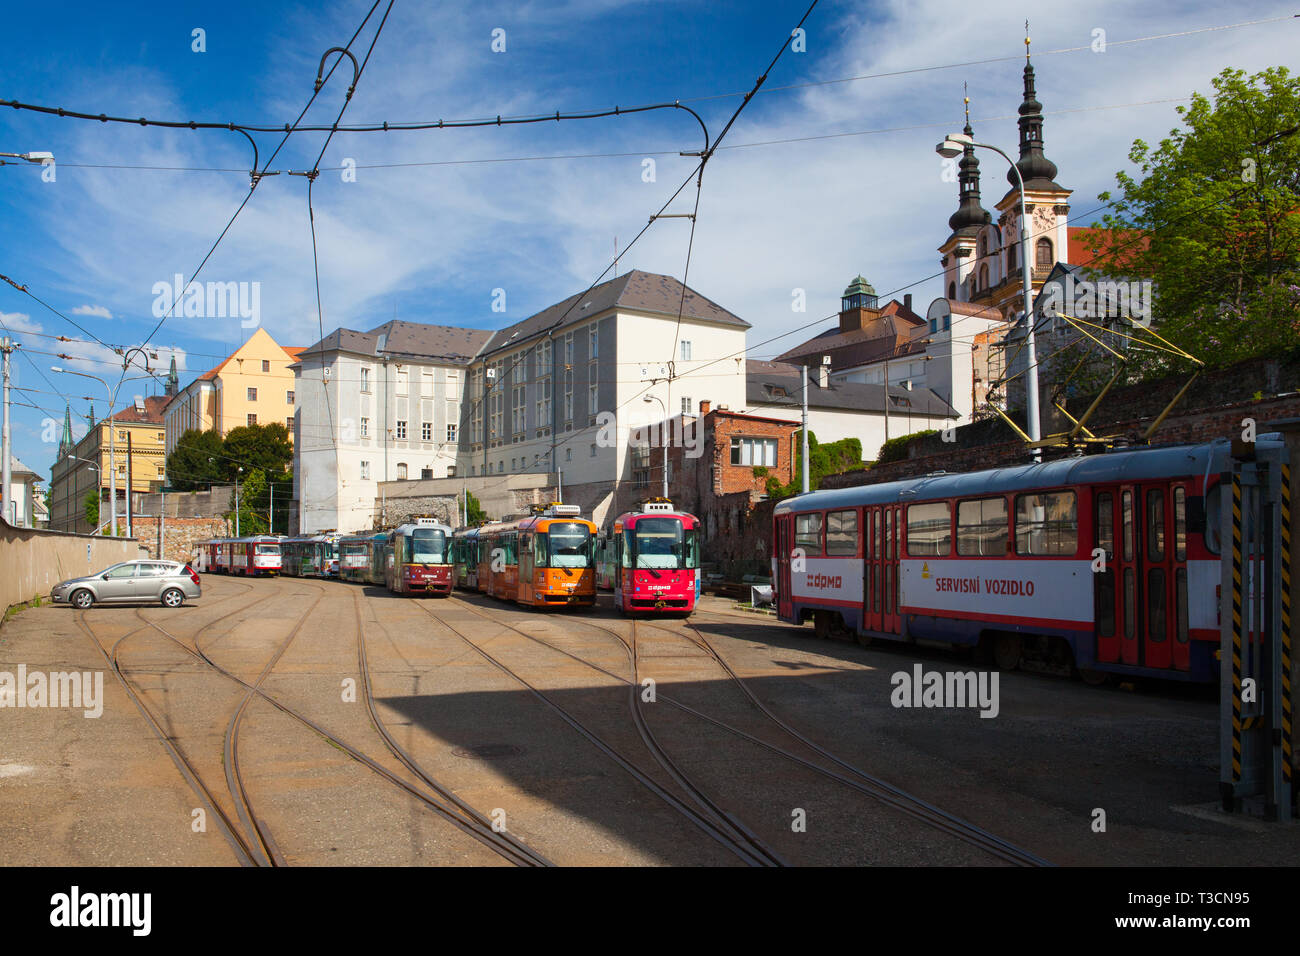 Olomouc, Tschechische Republik - Mai 5,2017: Die Haltestelle befindet sich im historischen Zentrum von Olmütz. Berühmten Unesco Weltkulturerbe Stadt und touristische Attraktion. Stockfoto